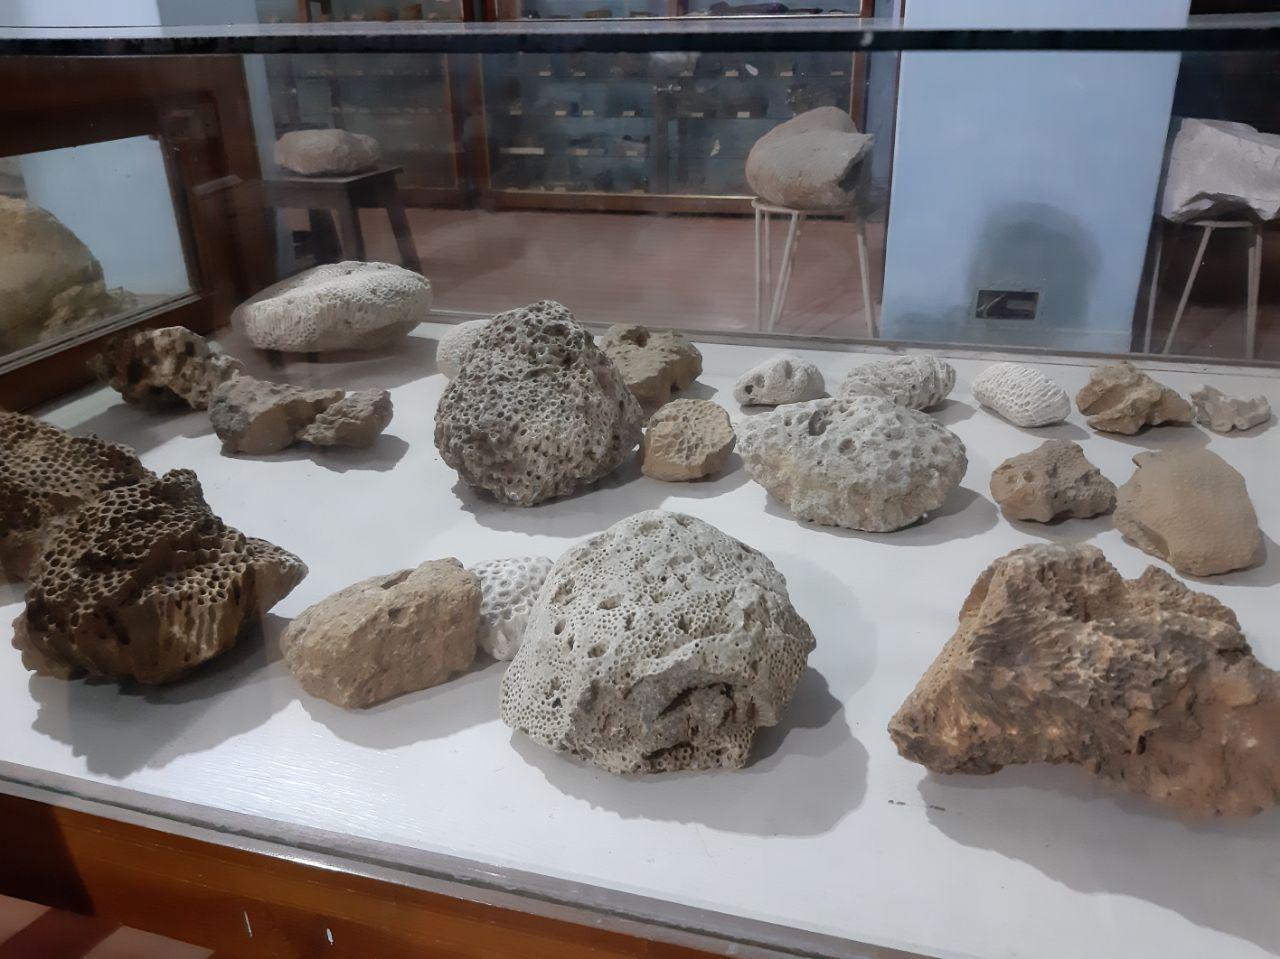 ये पत्थर सबूत है की 180 करोड़ साल पहले थार मरुस्थल की जगह था समुद्र